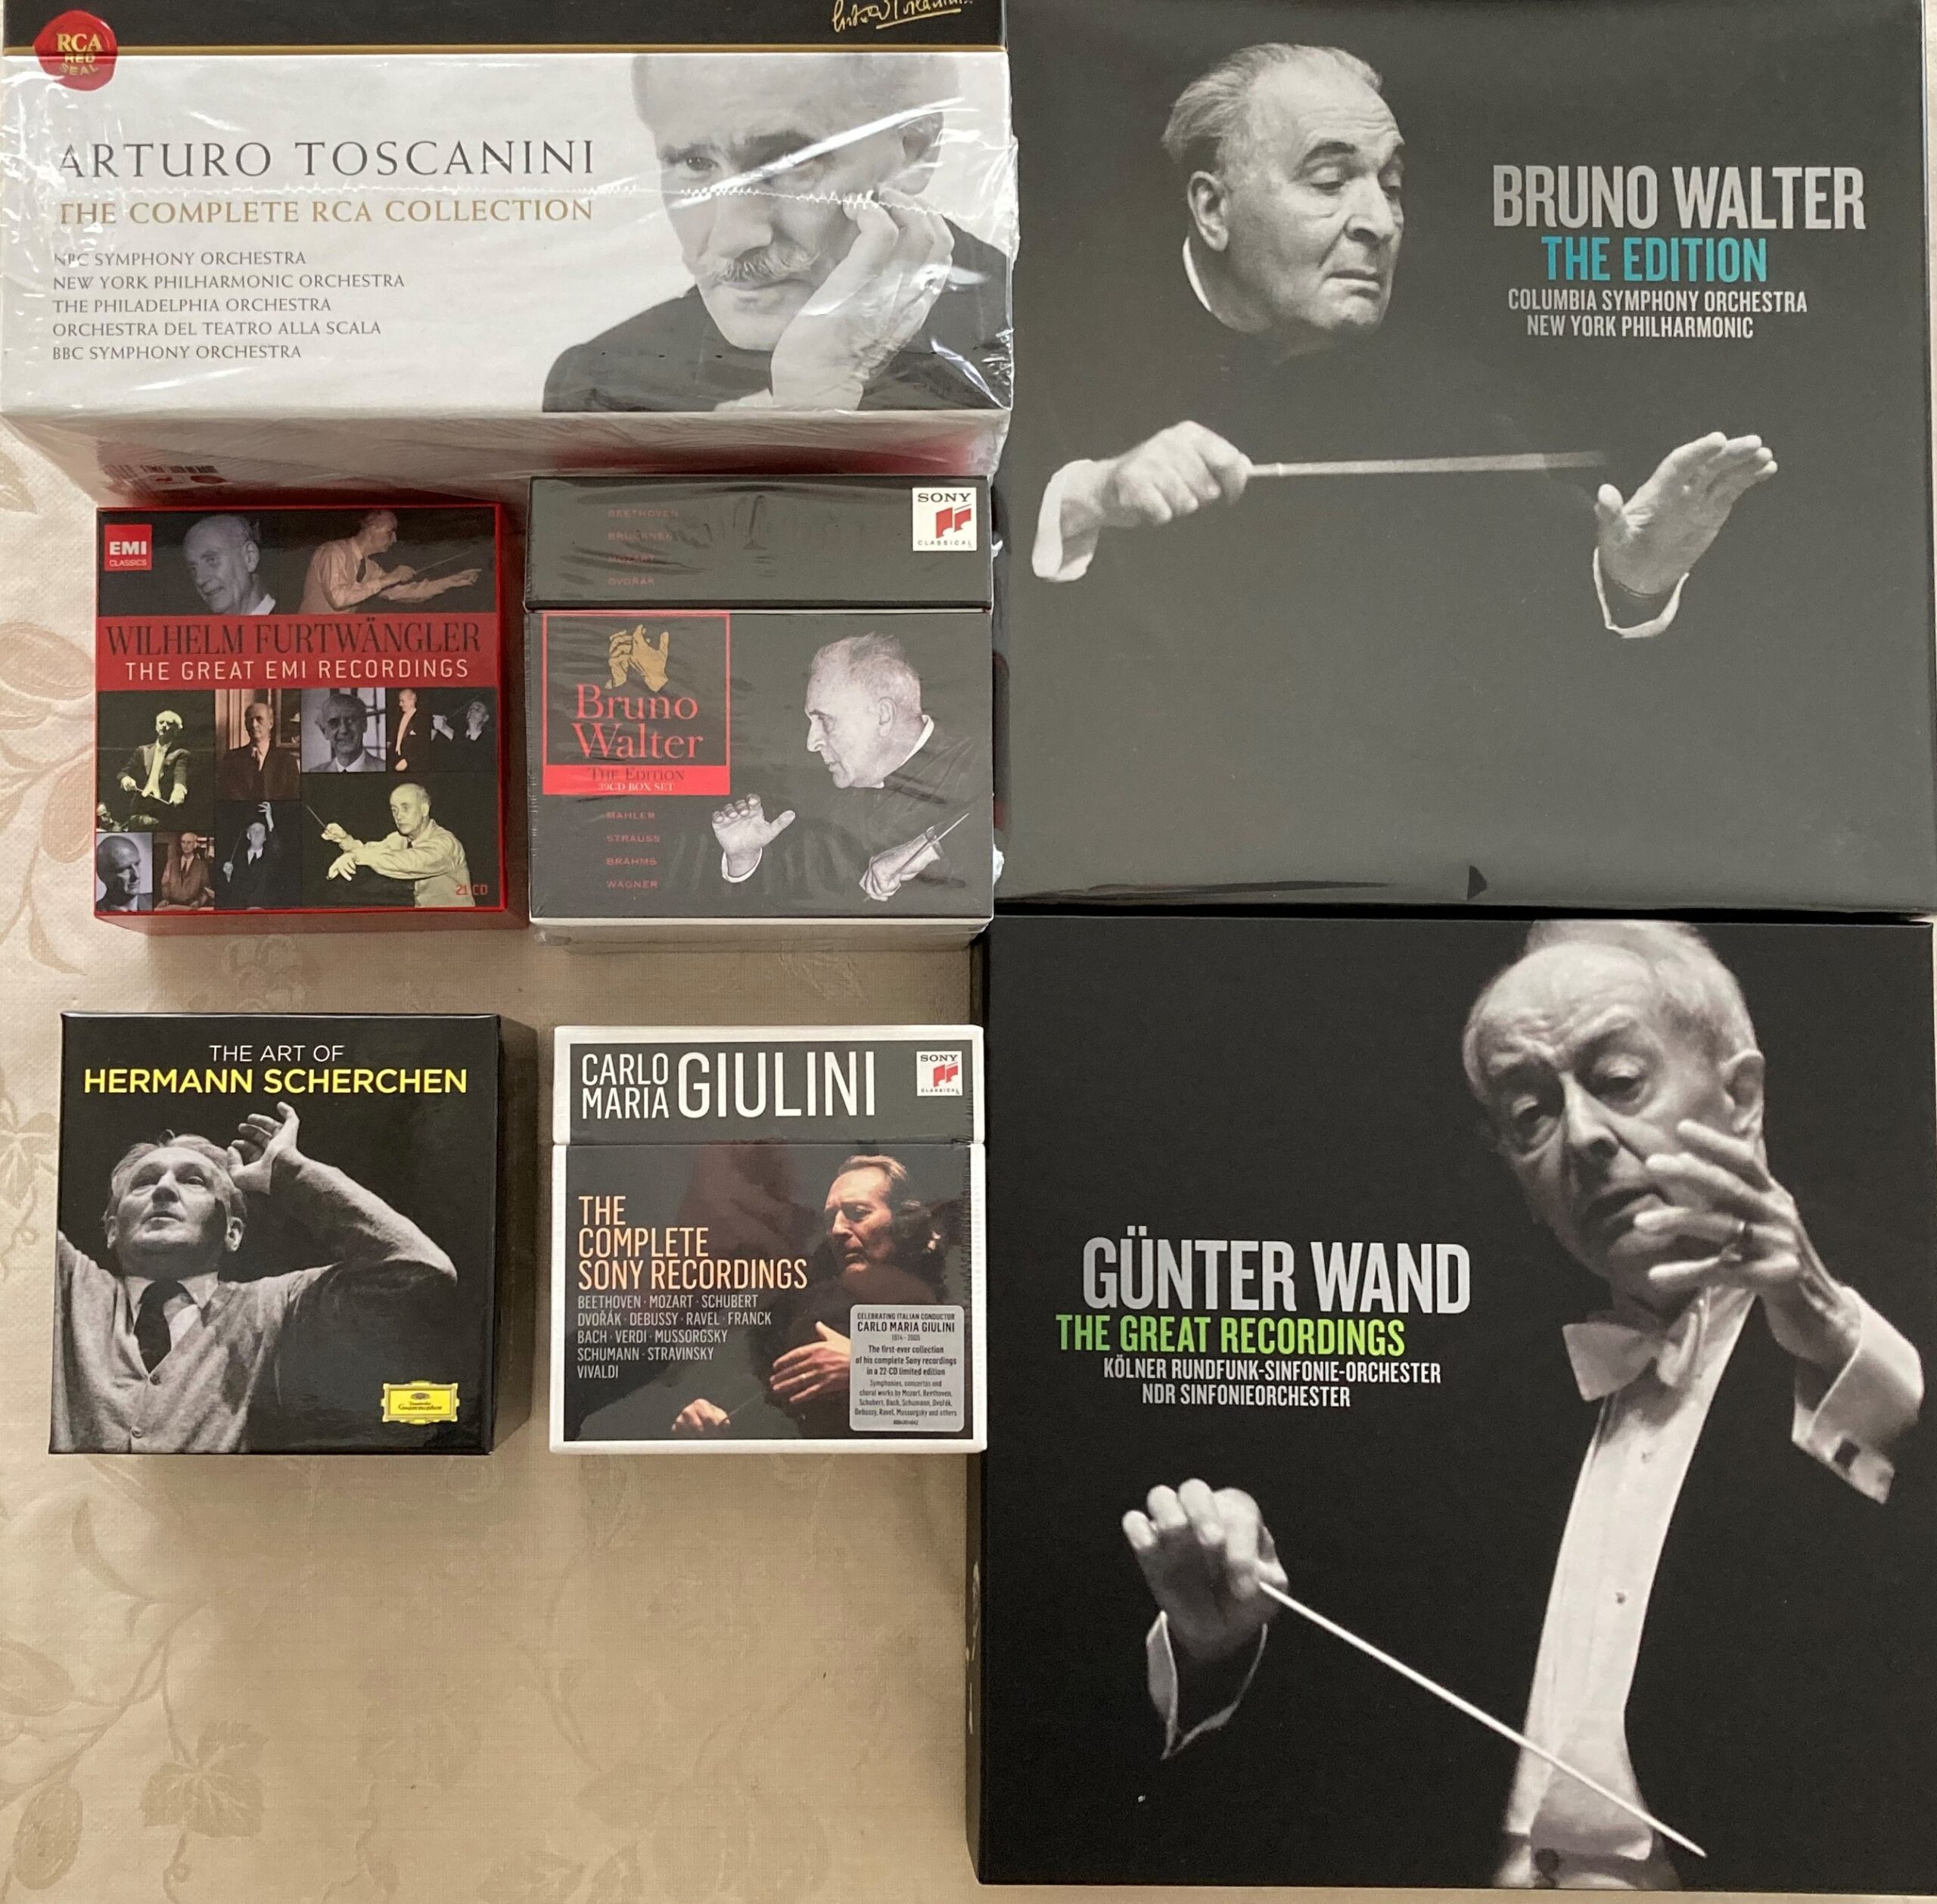 ベートーヴェンの交響曲全集が収められている指揮者の大きなBOXの写真。も。